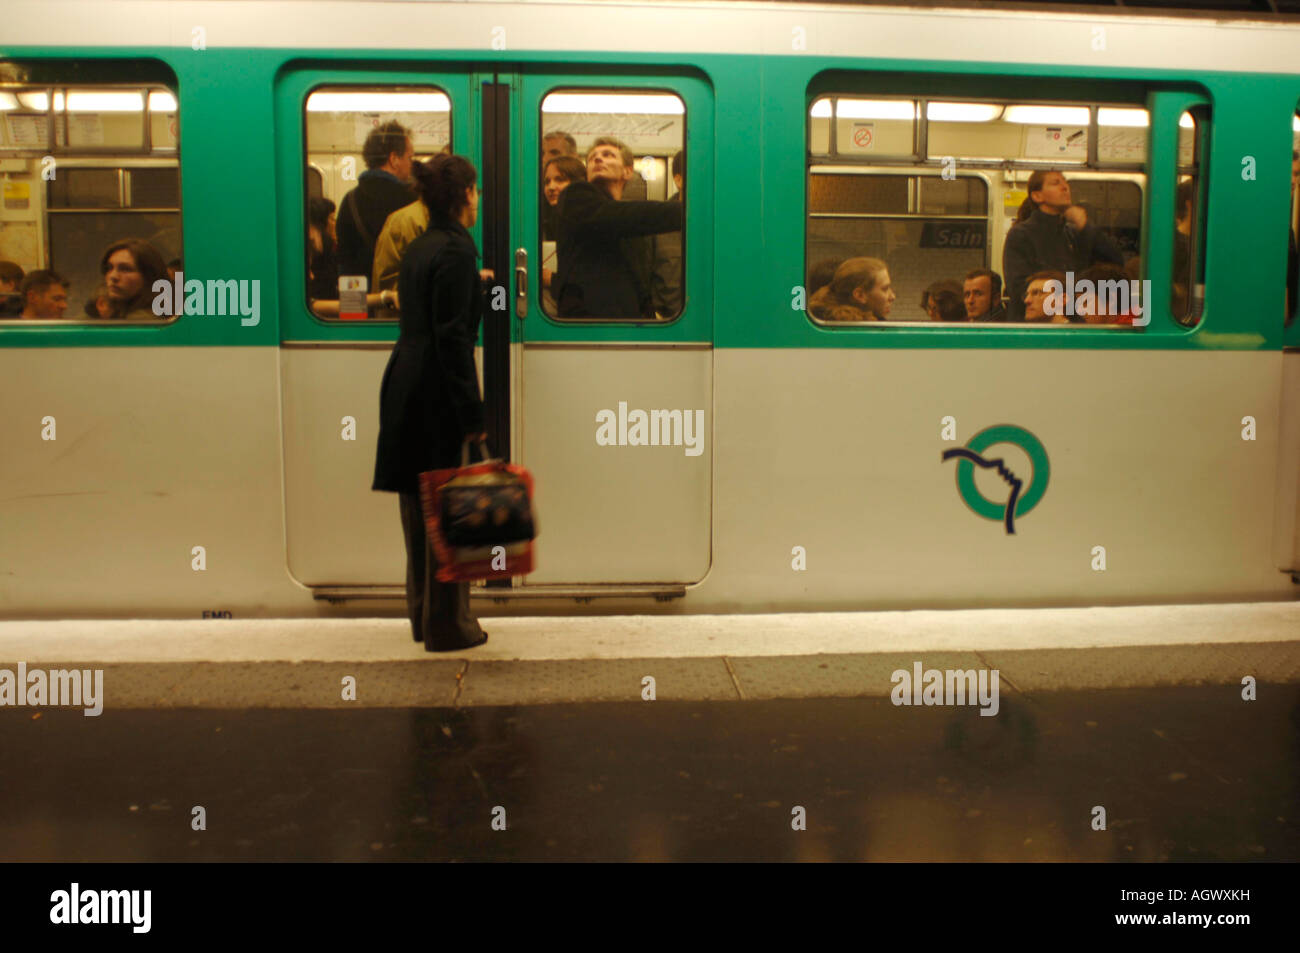 Les parisiens en attente d'un train sur le métro de Paris à la gare de St Germain des Prés Banque D'Images